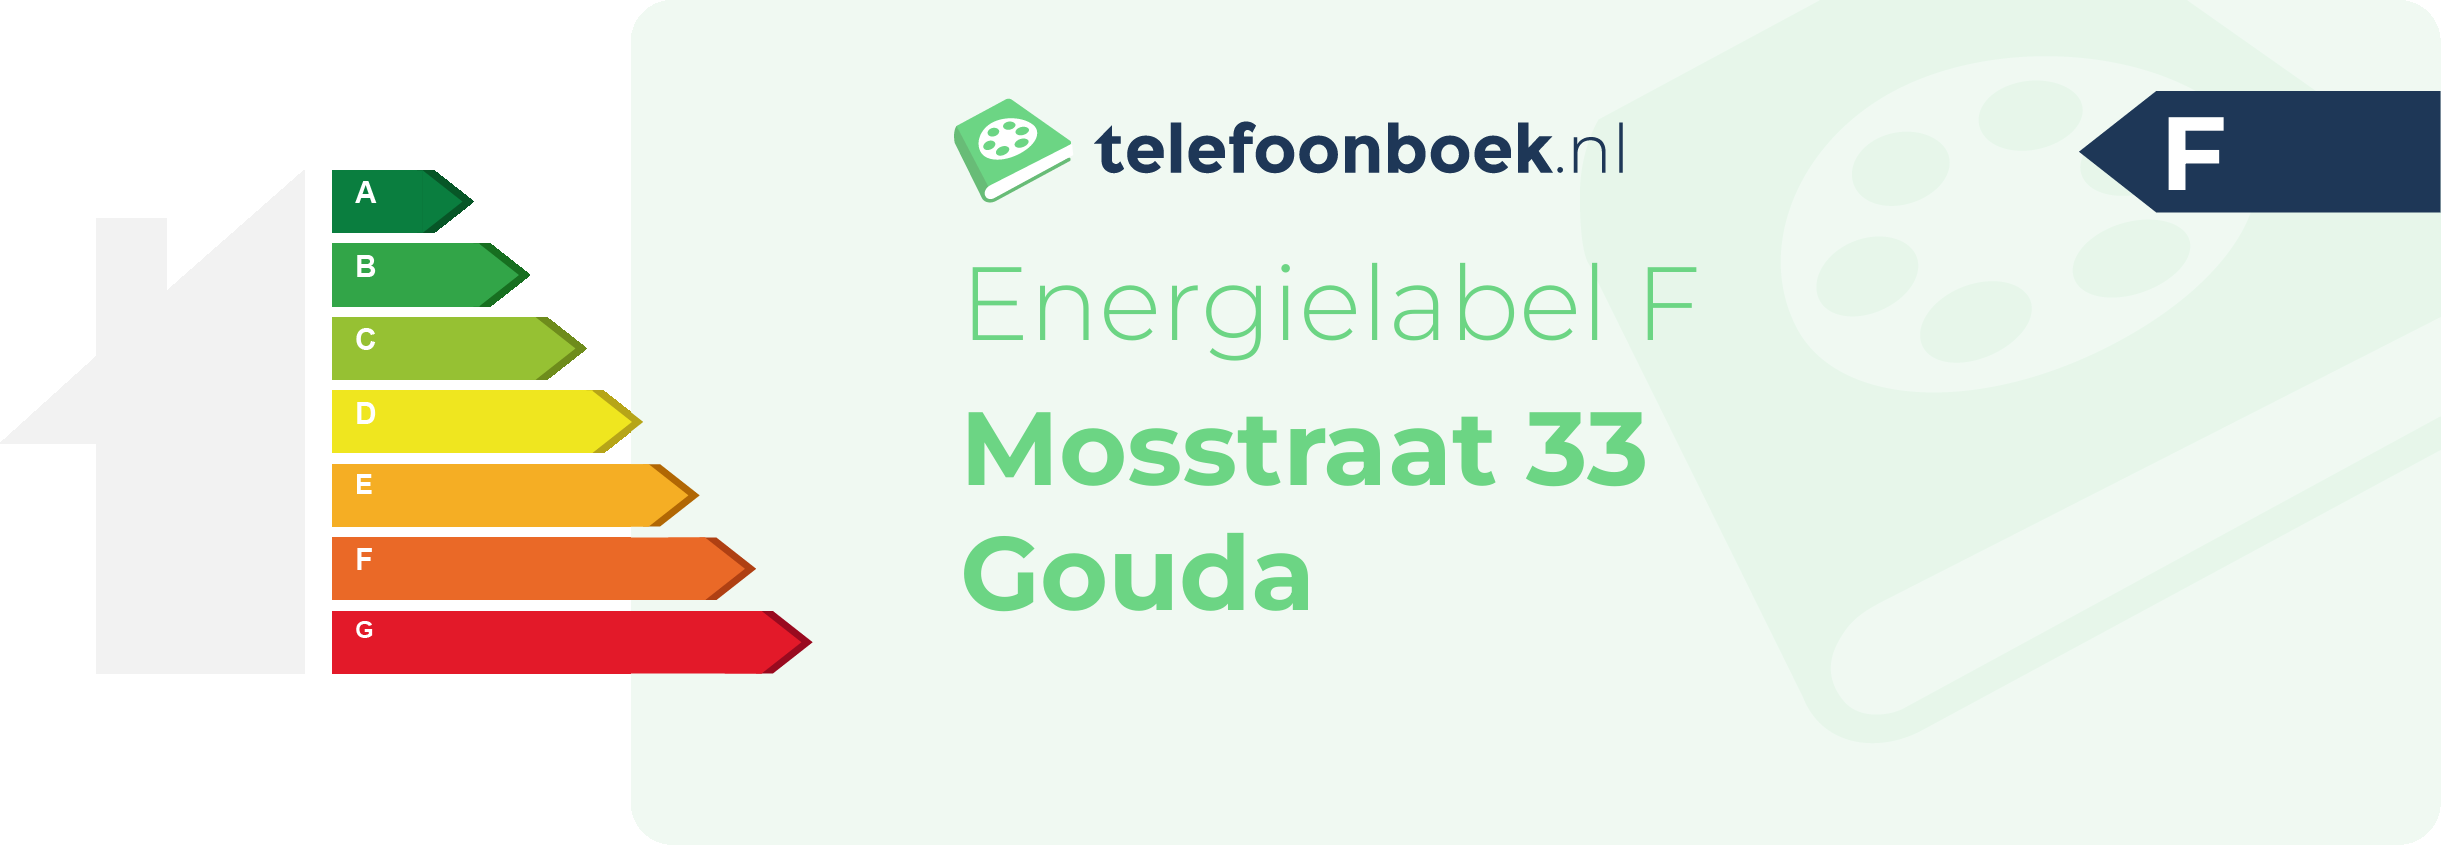 Energielabel Mosstraat 33 Gouda